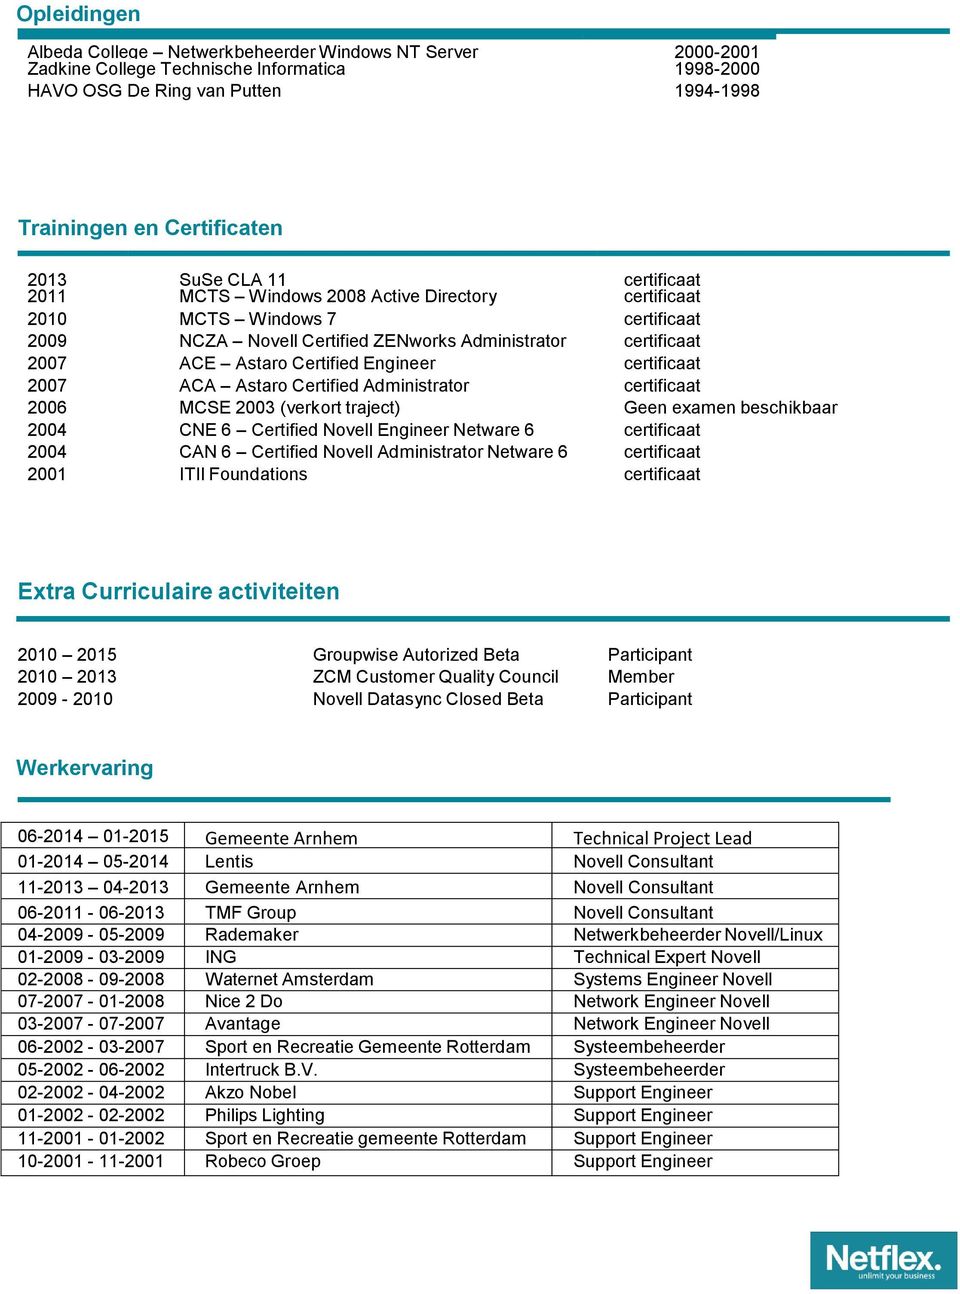 certificaat 2007 ACA Astaro Certified Administrator certificaat 2006 MCSE 2003 (verkort traject) Geen examen beschikbaar 2004 CNE 6 Certified Novell Engineer Netware 6 certificaat 2004 CAN 6